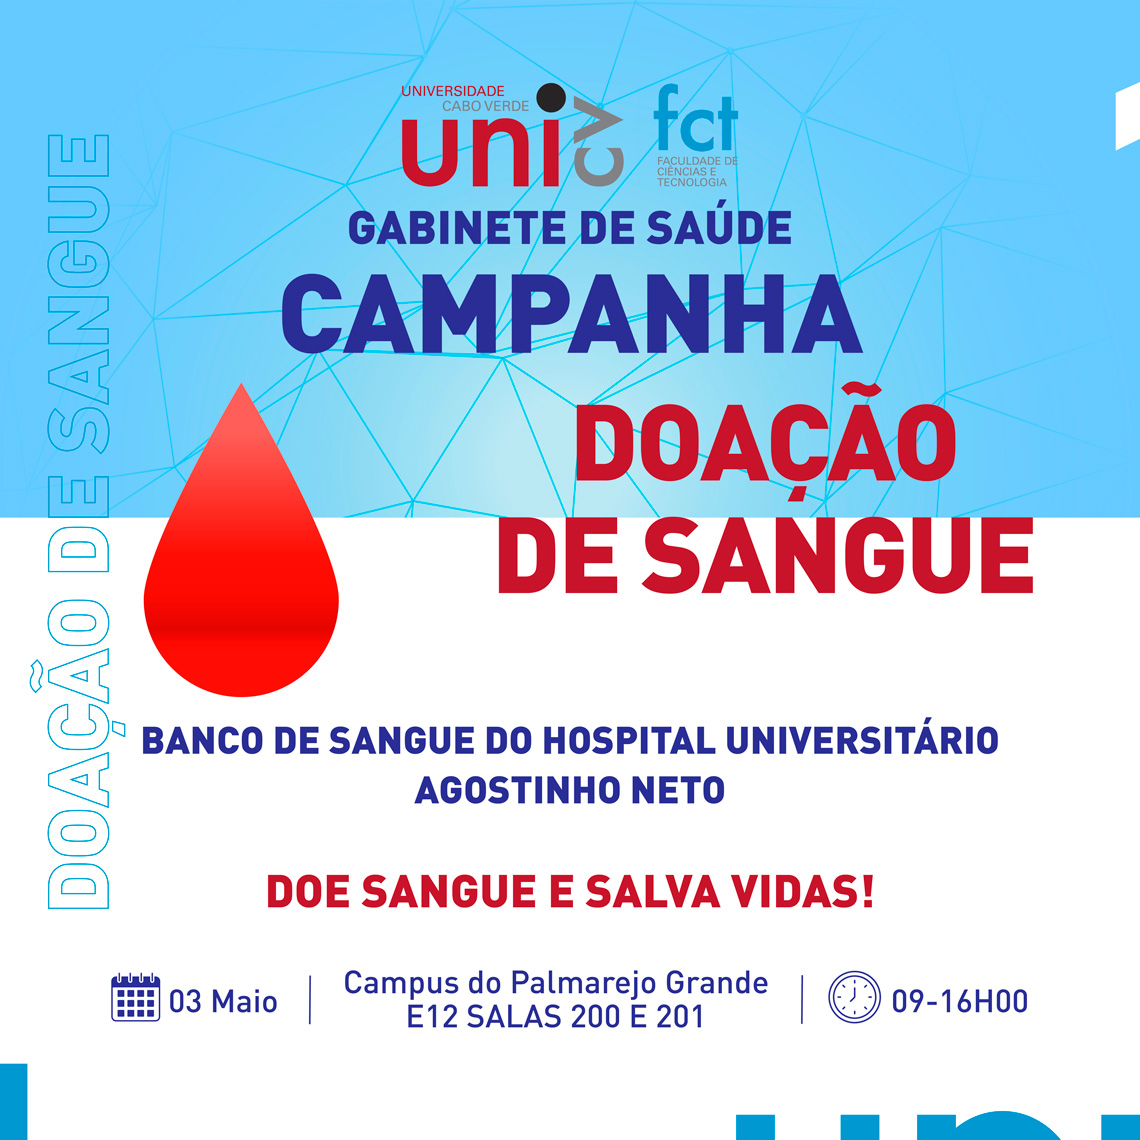 Doacao-de-Sangue-1_unicv.jpg